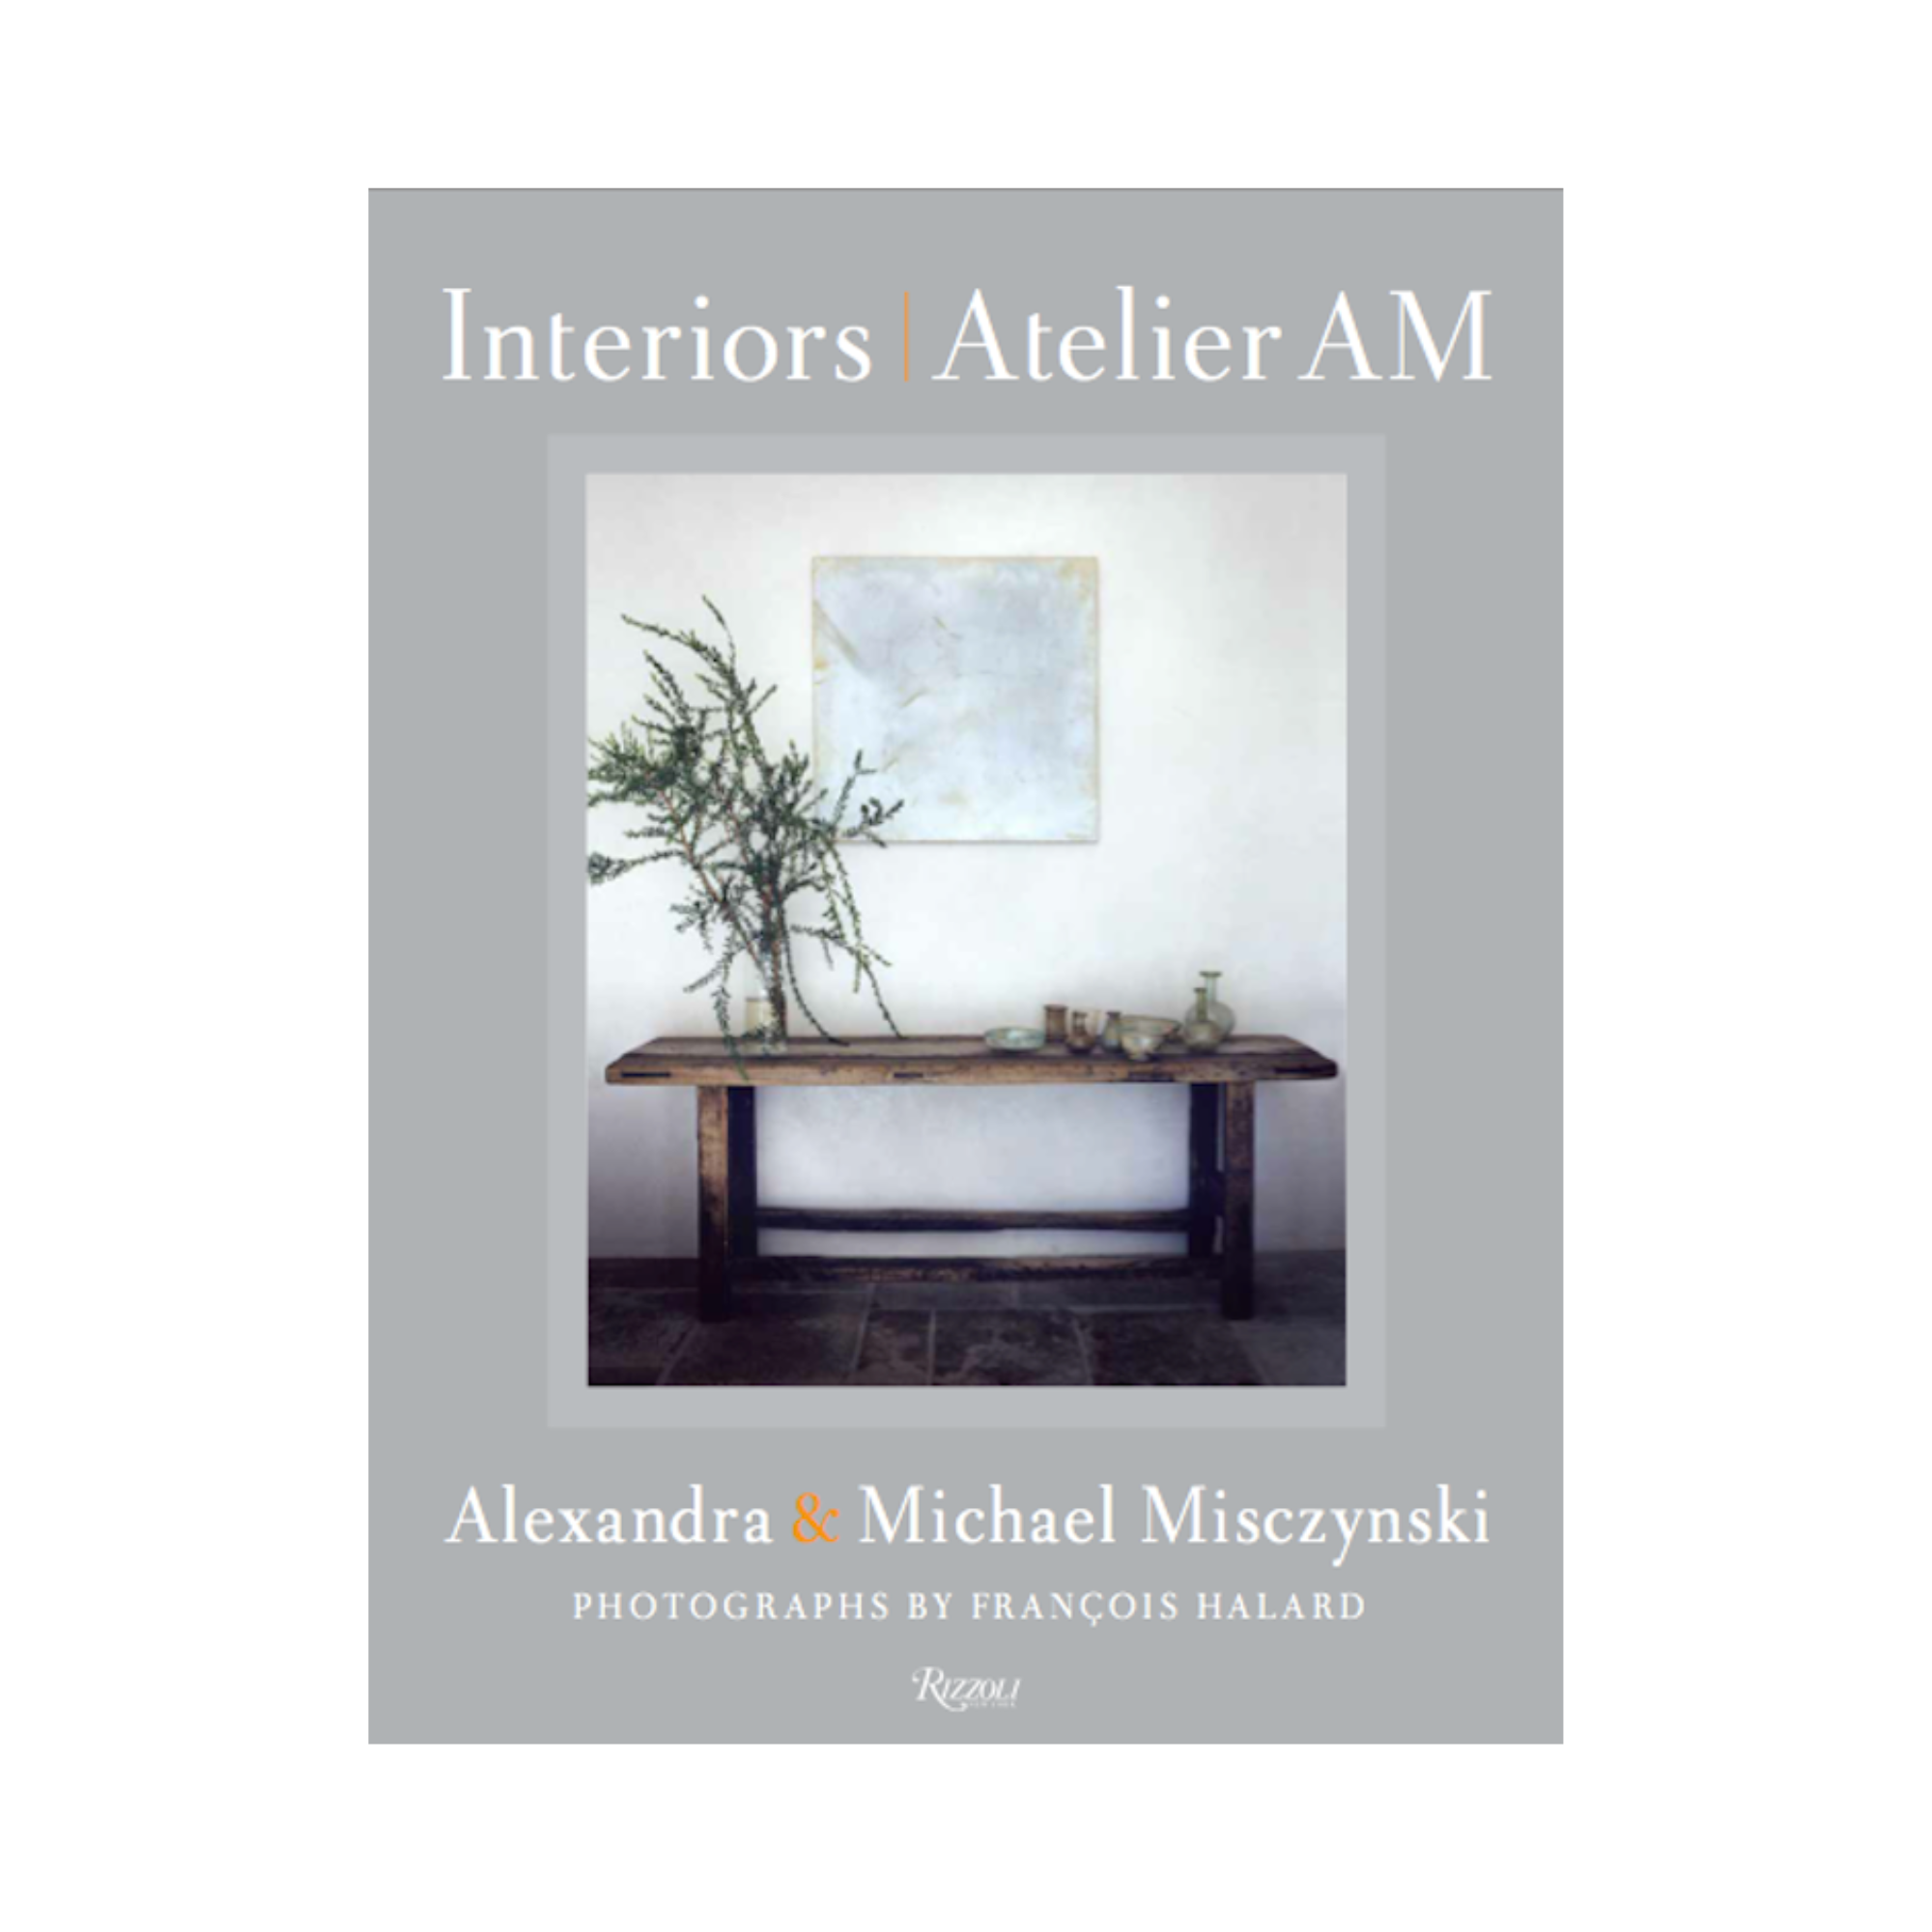 Interiors: Atelier AM